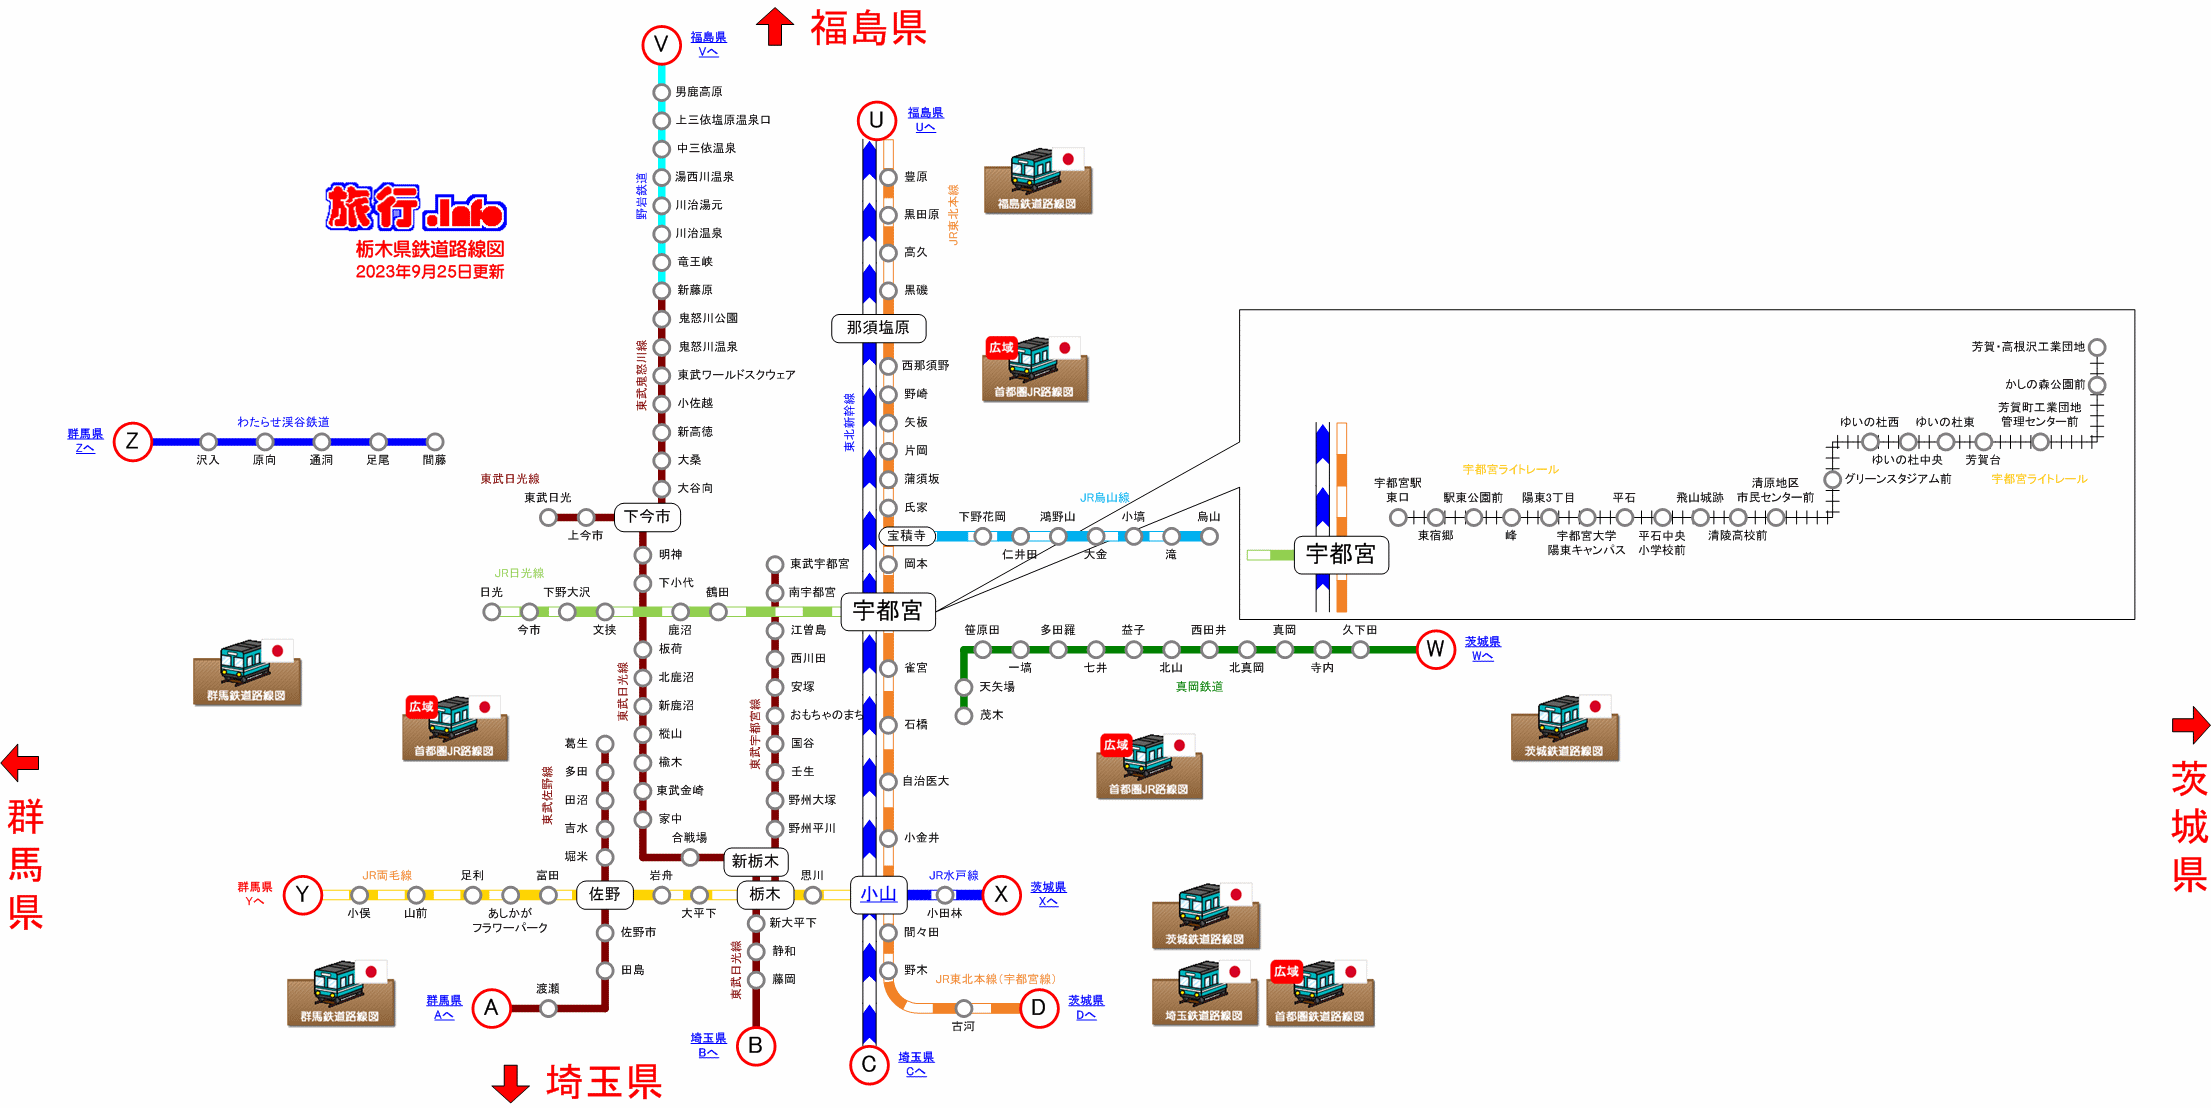 図 路線 東武 鉄道 東武伊勢崎線の路線図